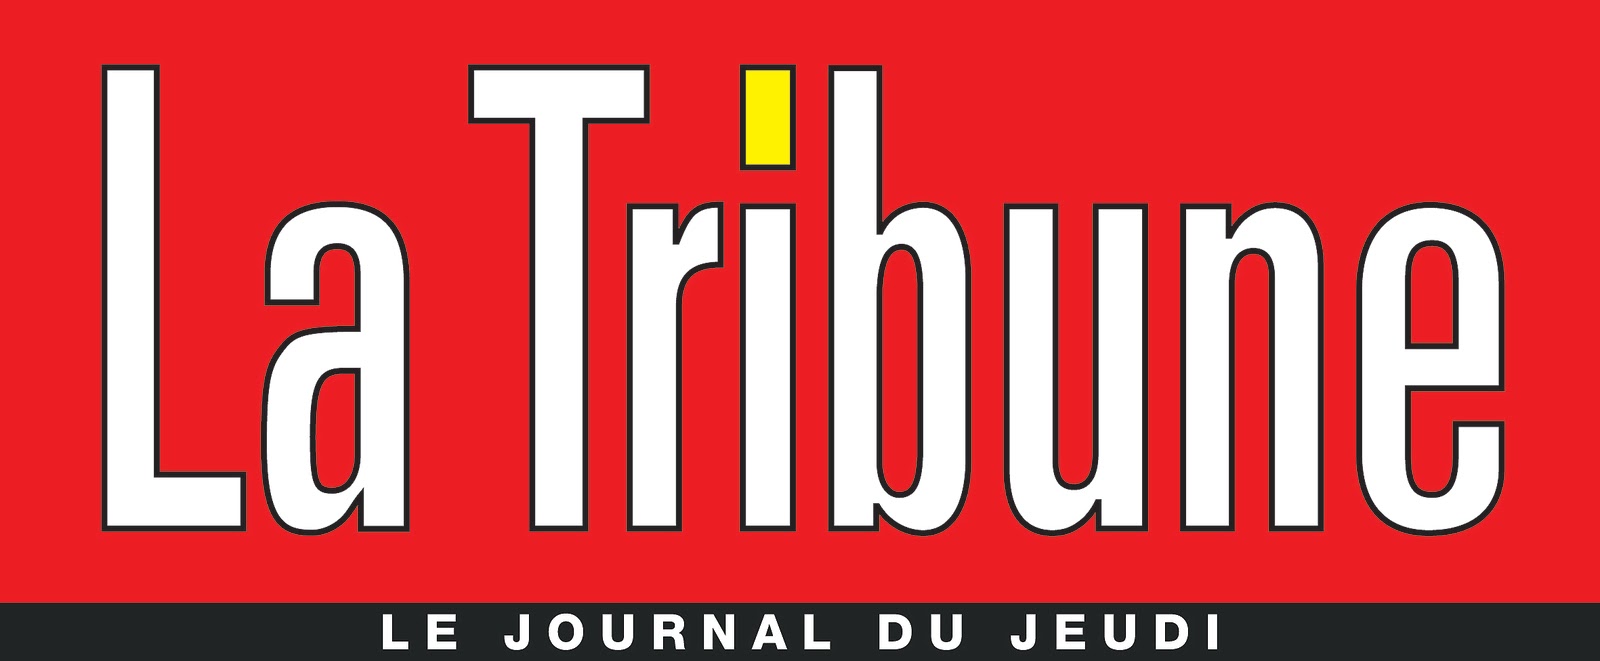 Article "La Tribune" sur Saint-Remèze du 18 novembre 2021